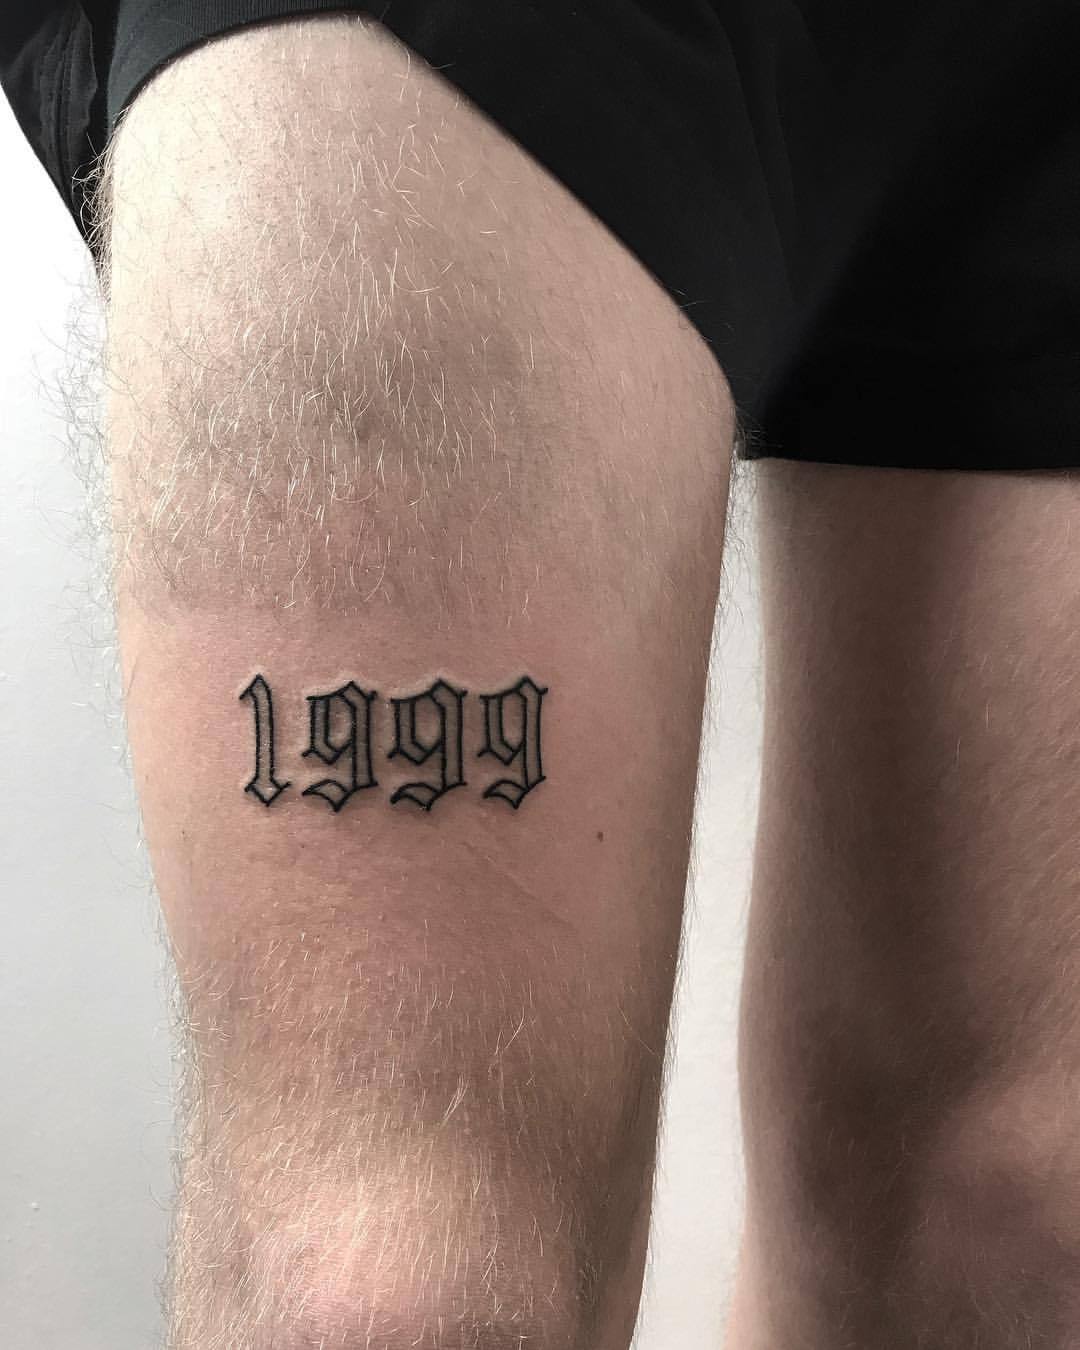 Birth Year 1999 Tattoo Fonts Best Tattoo Ideas